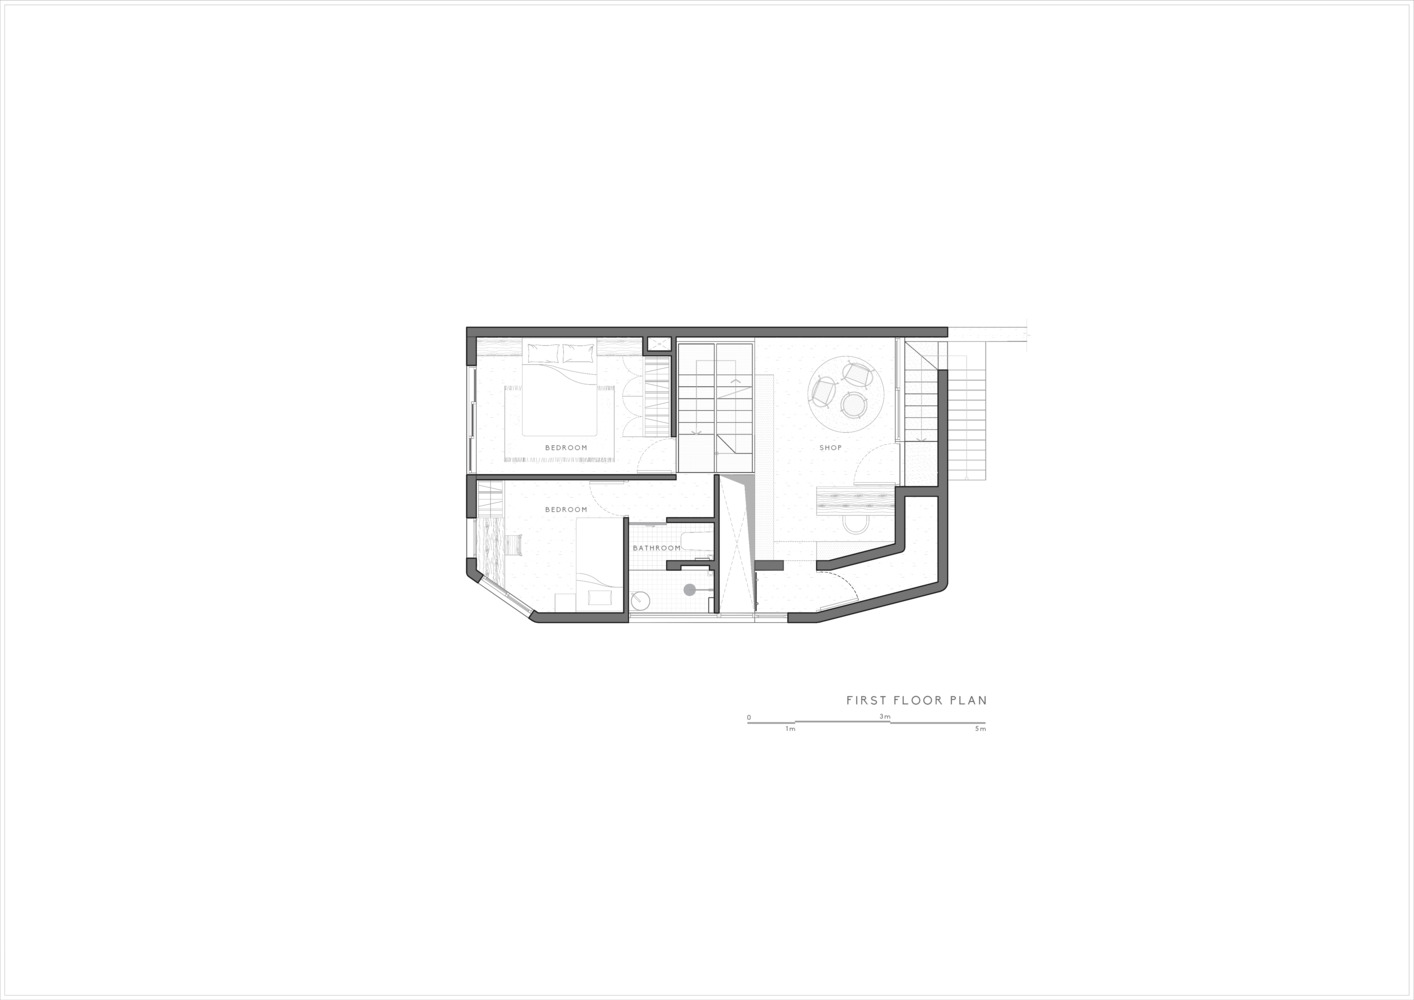 CHI's House: Kiến trúc phản ánh những yếu tố đối lập, tạo nên sự bí ẩn cho ngôi nhà giữa lòng Đà Lạt - Ảnh 22